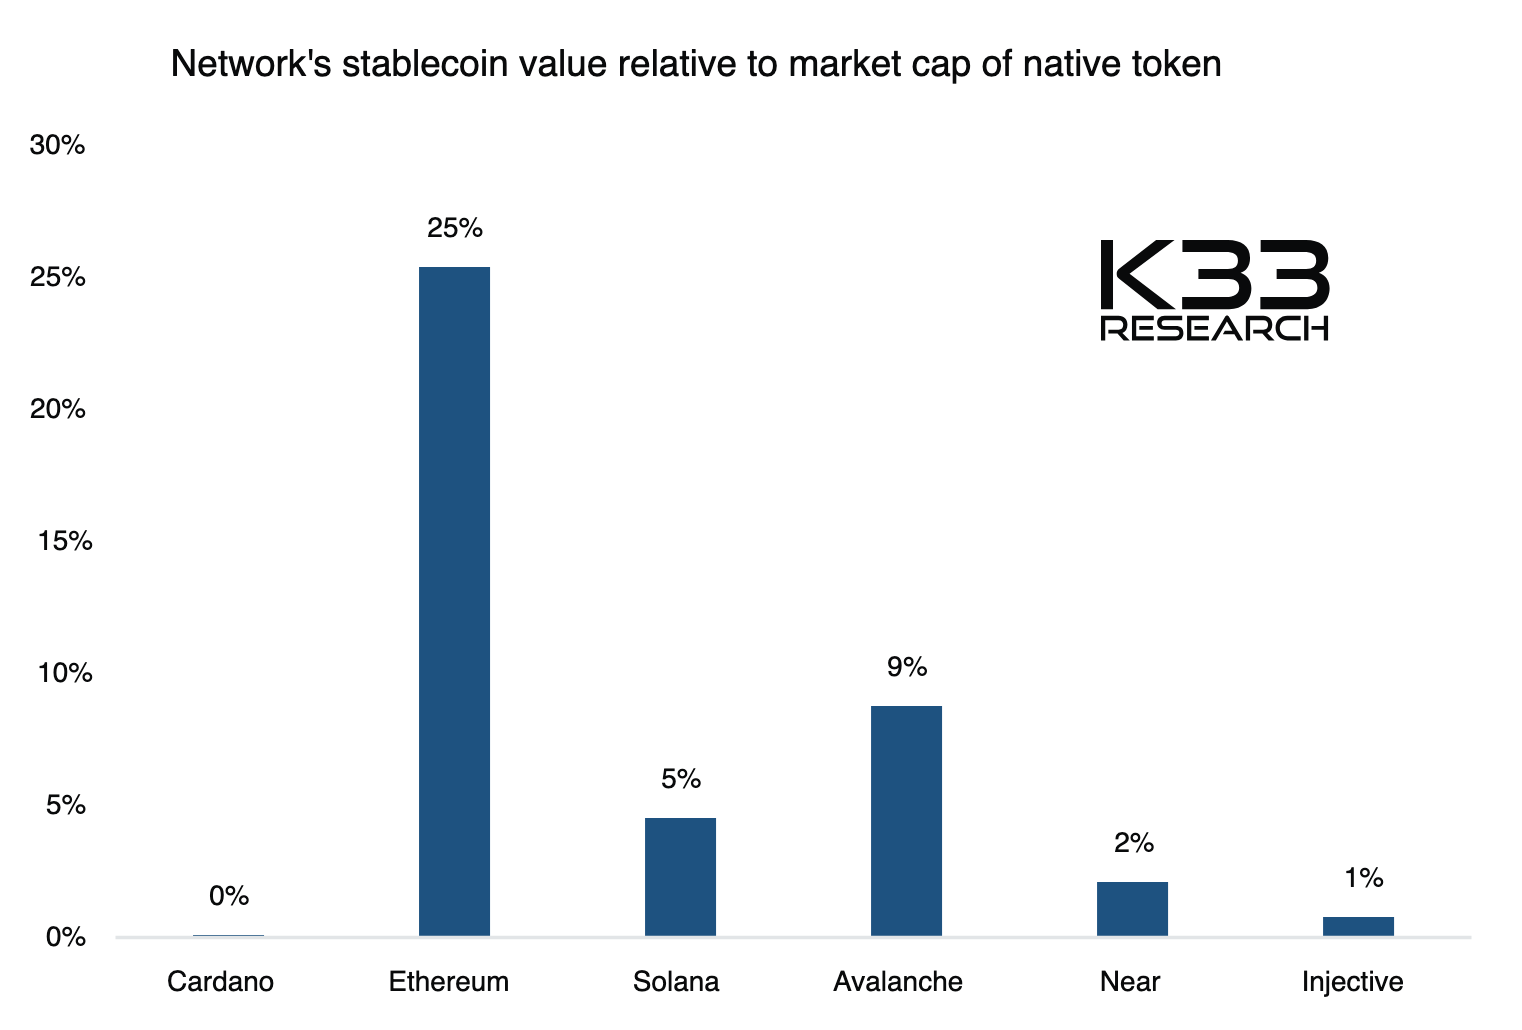 Valor de stablecoin en relación con la capitalización de mercado del token nativo. Fuente: K33 Research